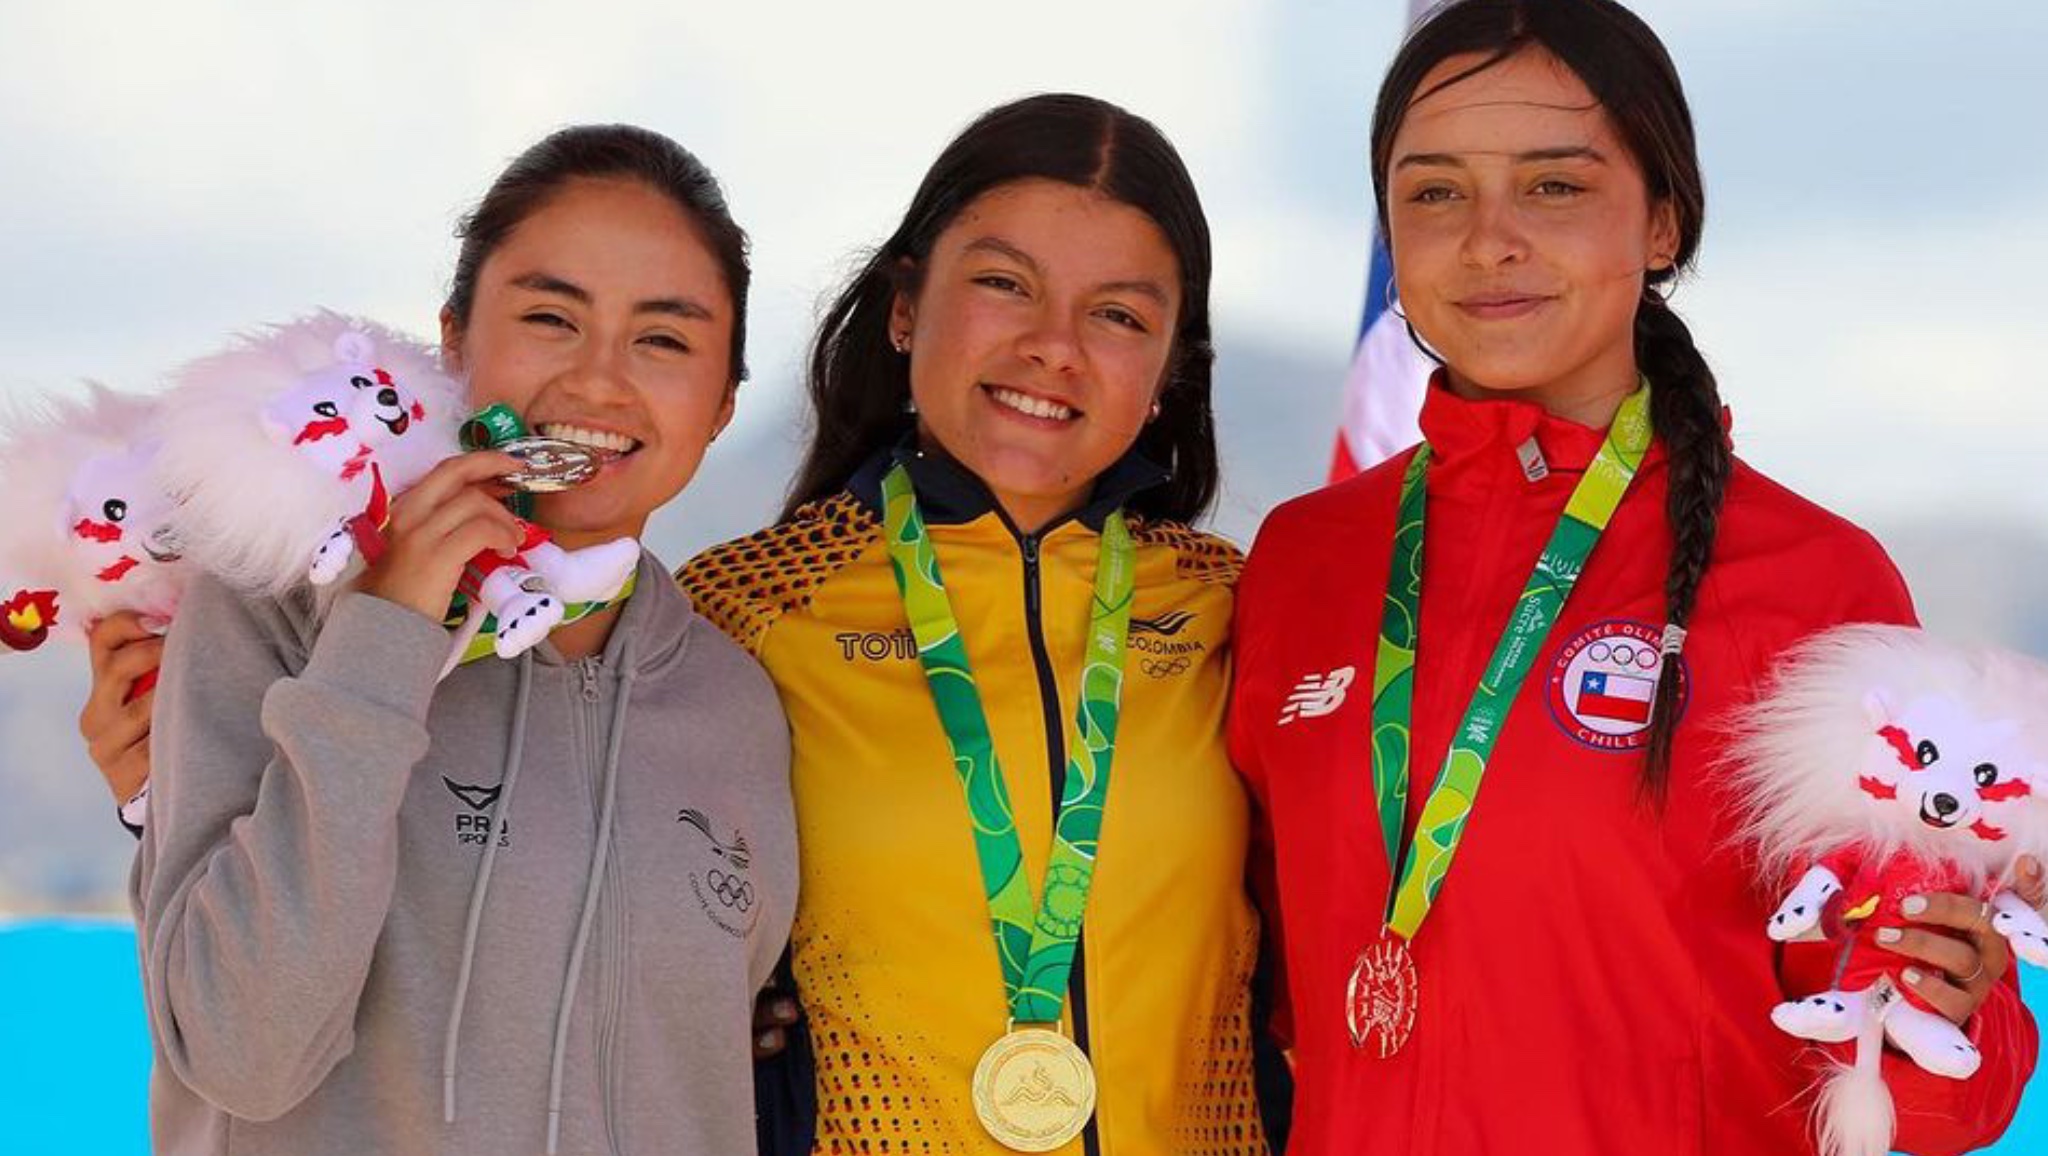 Carmelitana obtiene 2 oros en Juegos Bolivarianos